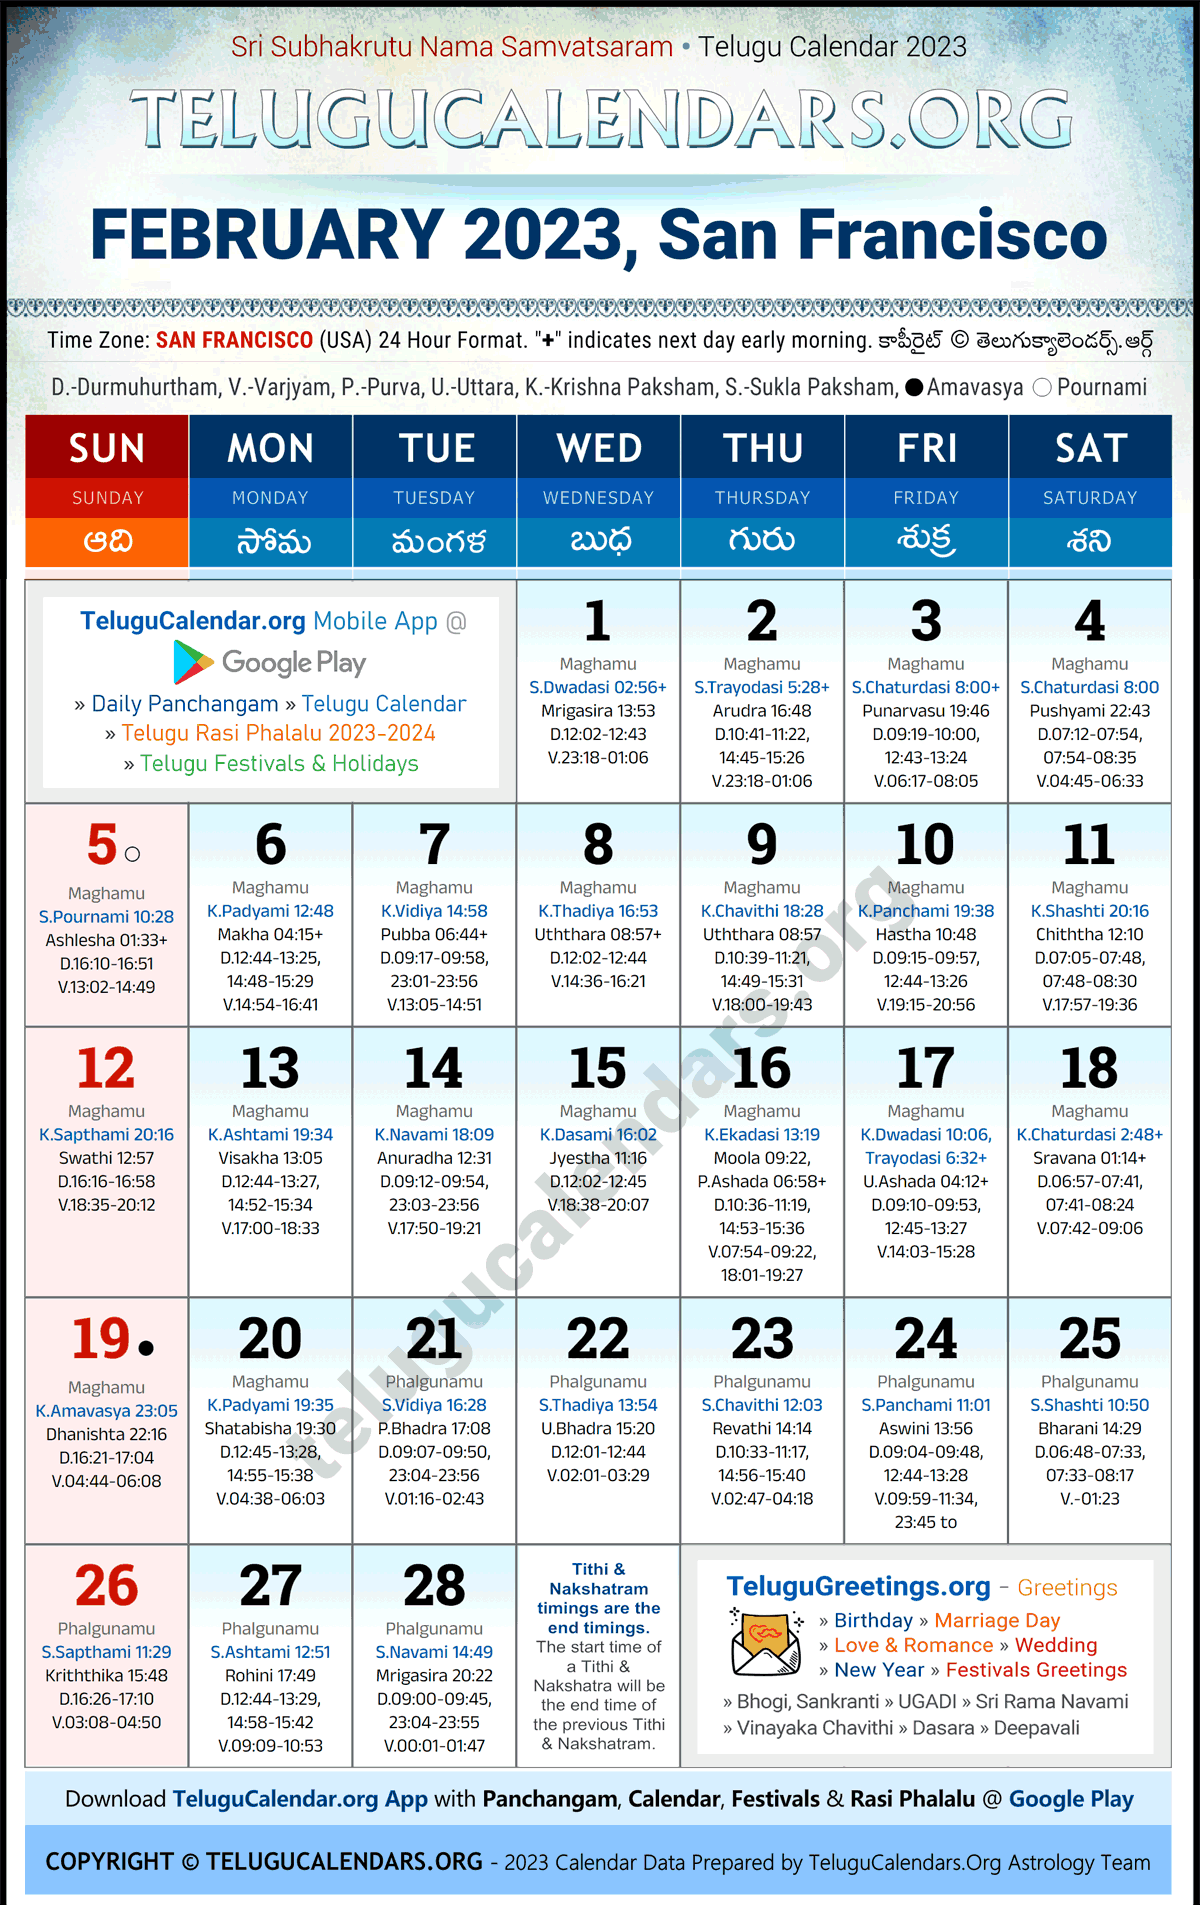 Telugu Calendar 2023 February Festivals for San Francisco